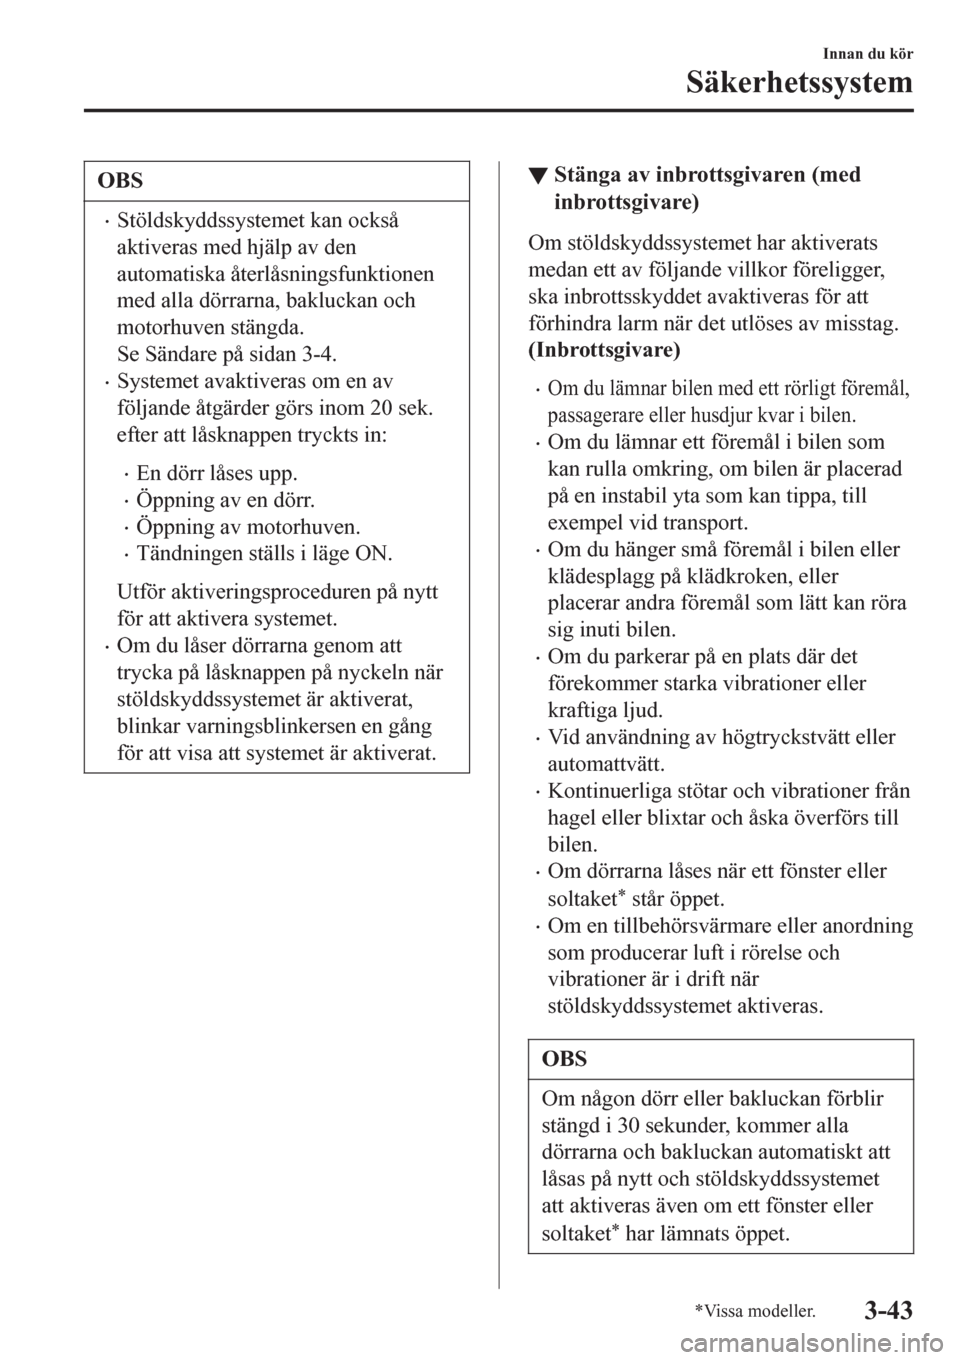 MAZDA MODEL CX-3 2016  Ägarmanual (in Swedish) OBS
•Stöldskyddssystemet kan också
aktiveras med hjälp av den
automatiska återlåsningsfunktionen
med alla dörrarna, bakluckan och
motorhuven stängda.
Se Sändare på sidan 3-4.
•Systemet av